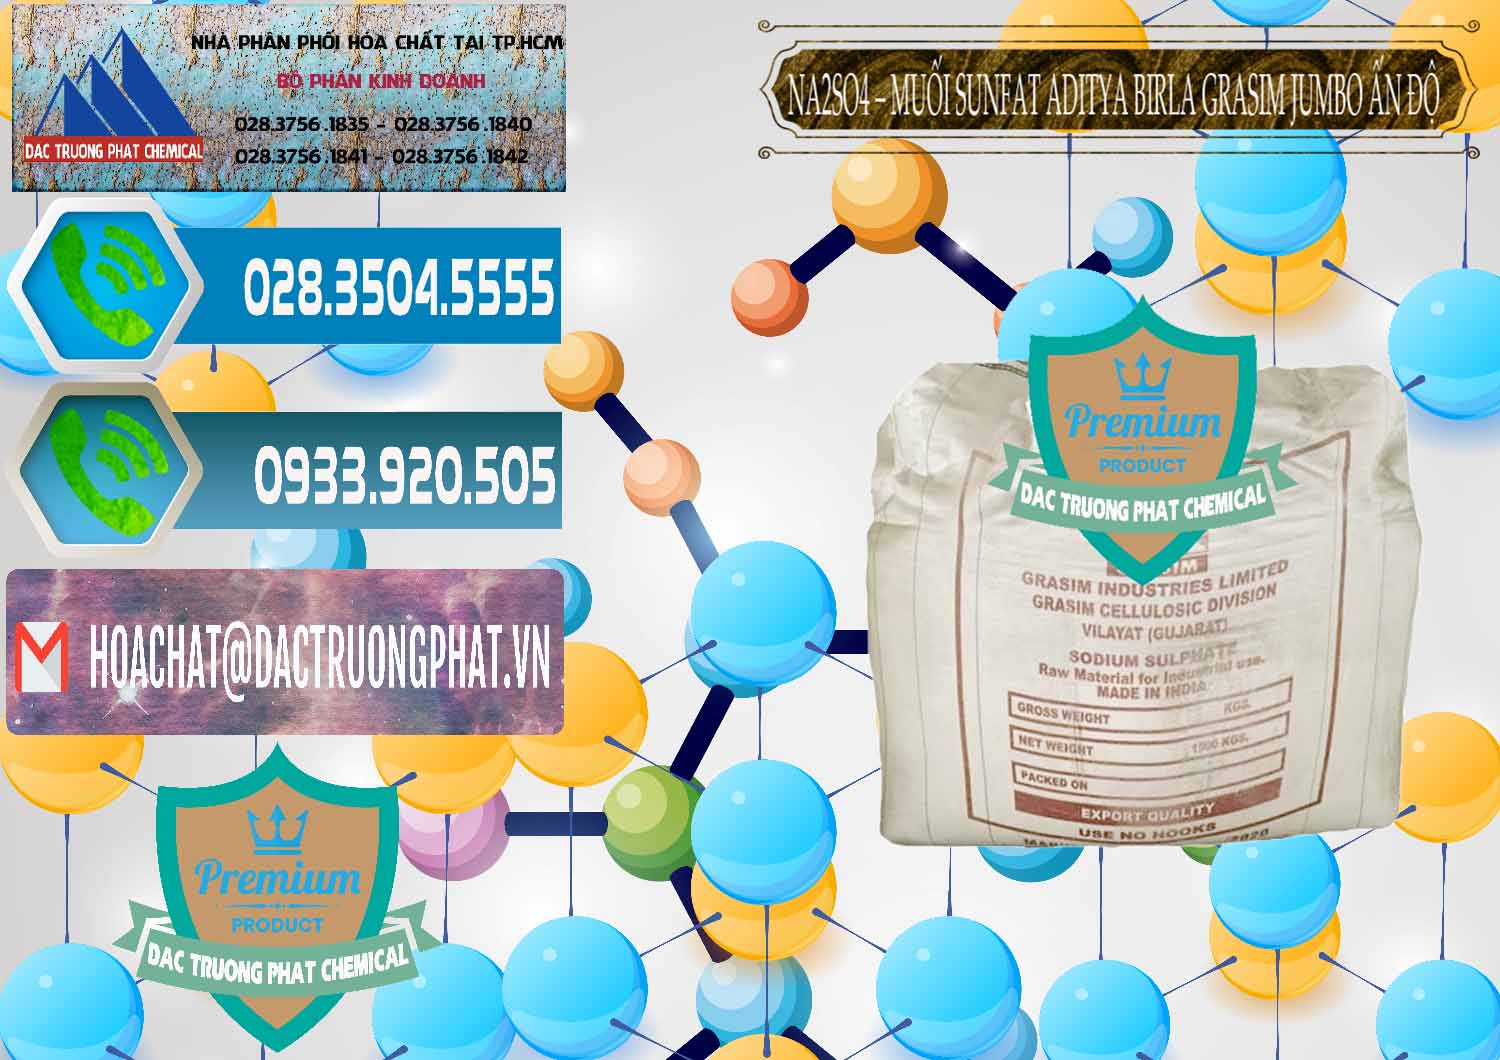 Cty bán _ phân phối Sodium Sulphate - Muối Sunfat Na2SO4 Jumbo Bành Aditya Birla Grasim Ấn Độ India - 0357 - Cty chuyên cung cấp _ nhập khẩu hóa chất tại TP.HCM - congtyhoachat.net